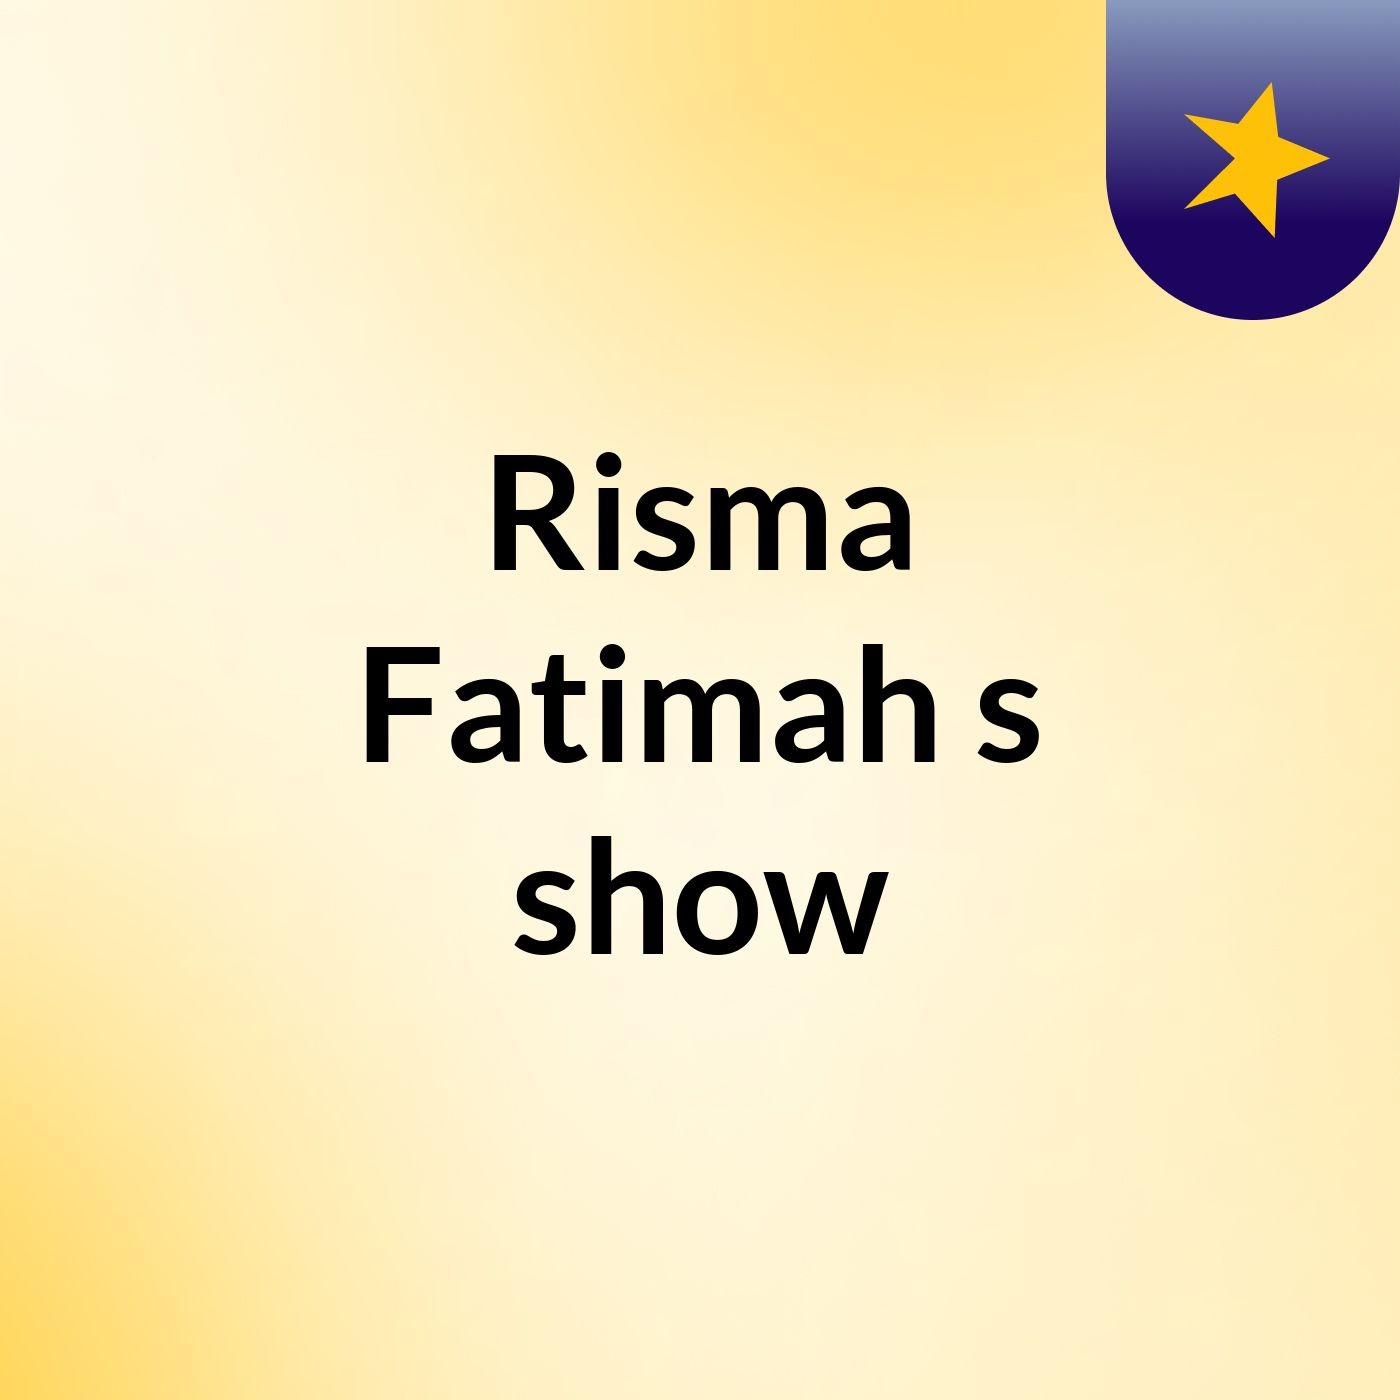 Risma Fatimah's show